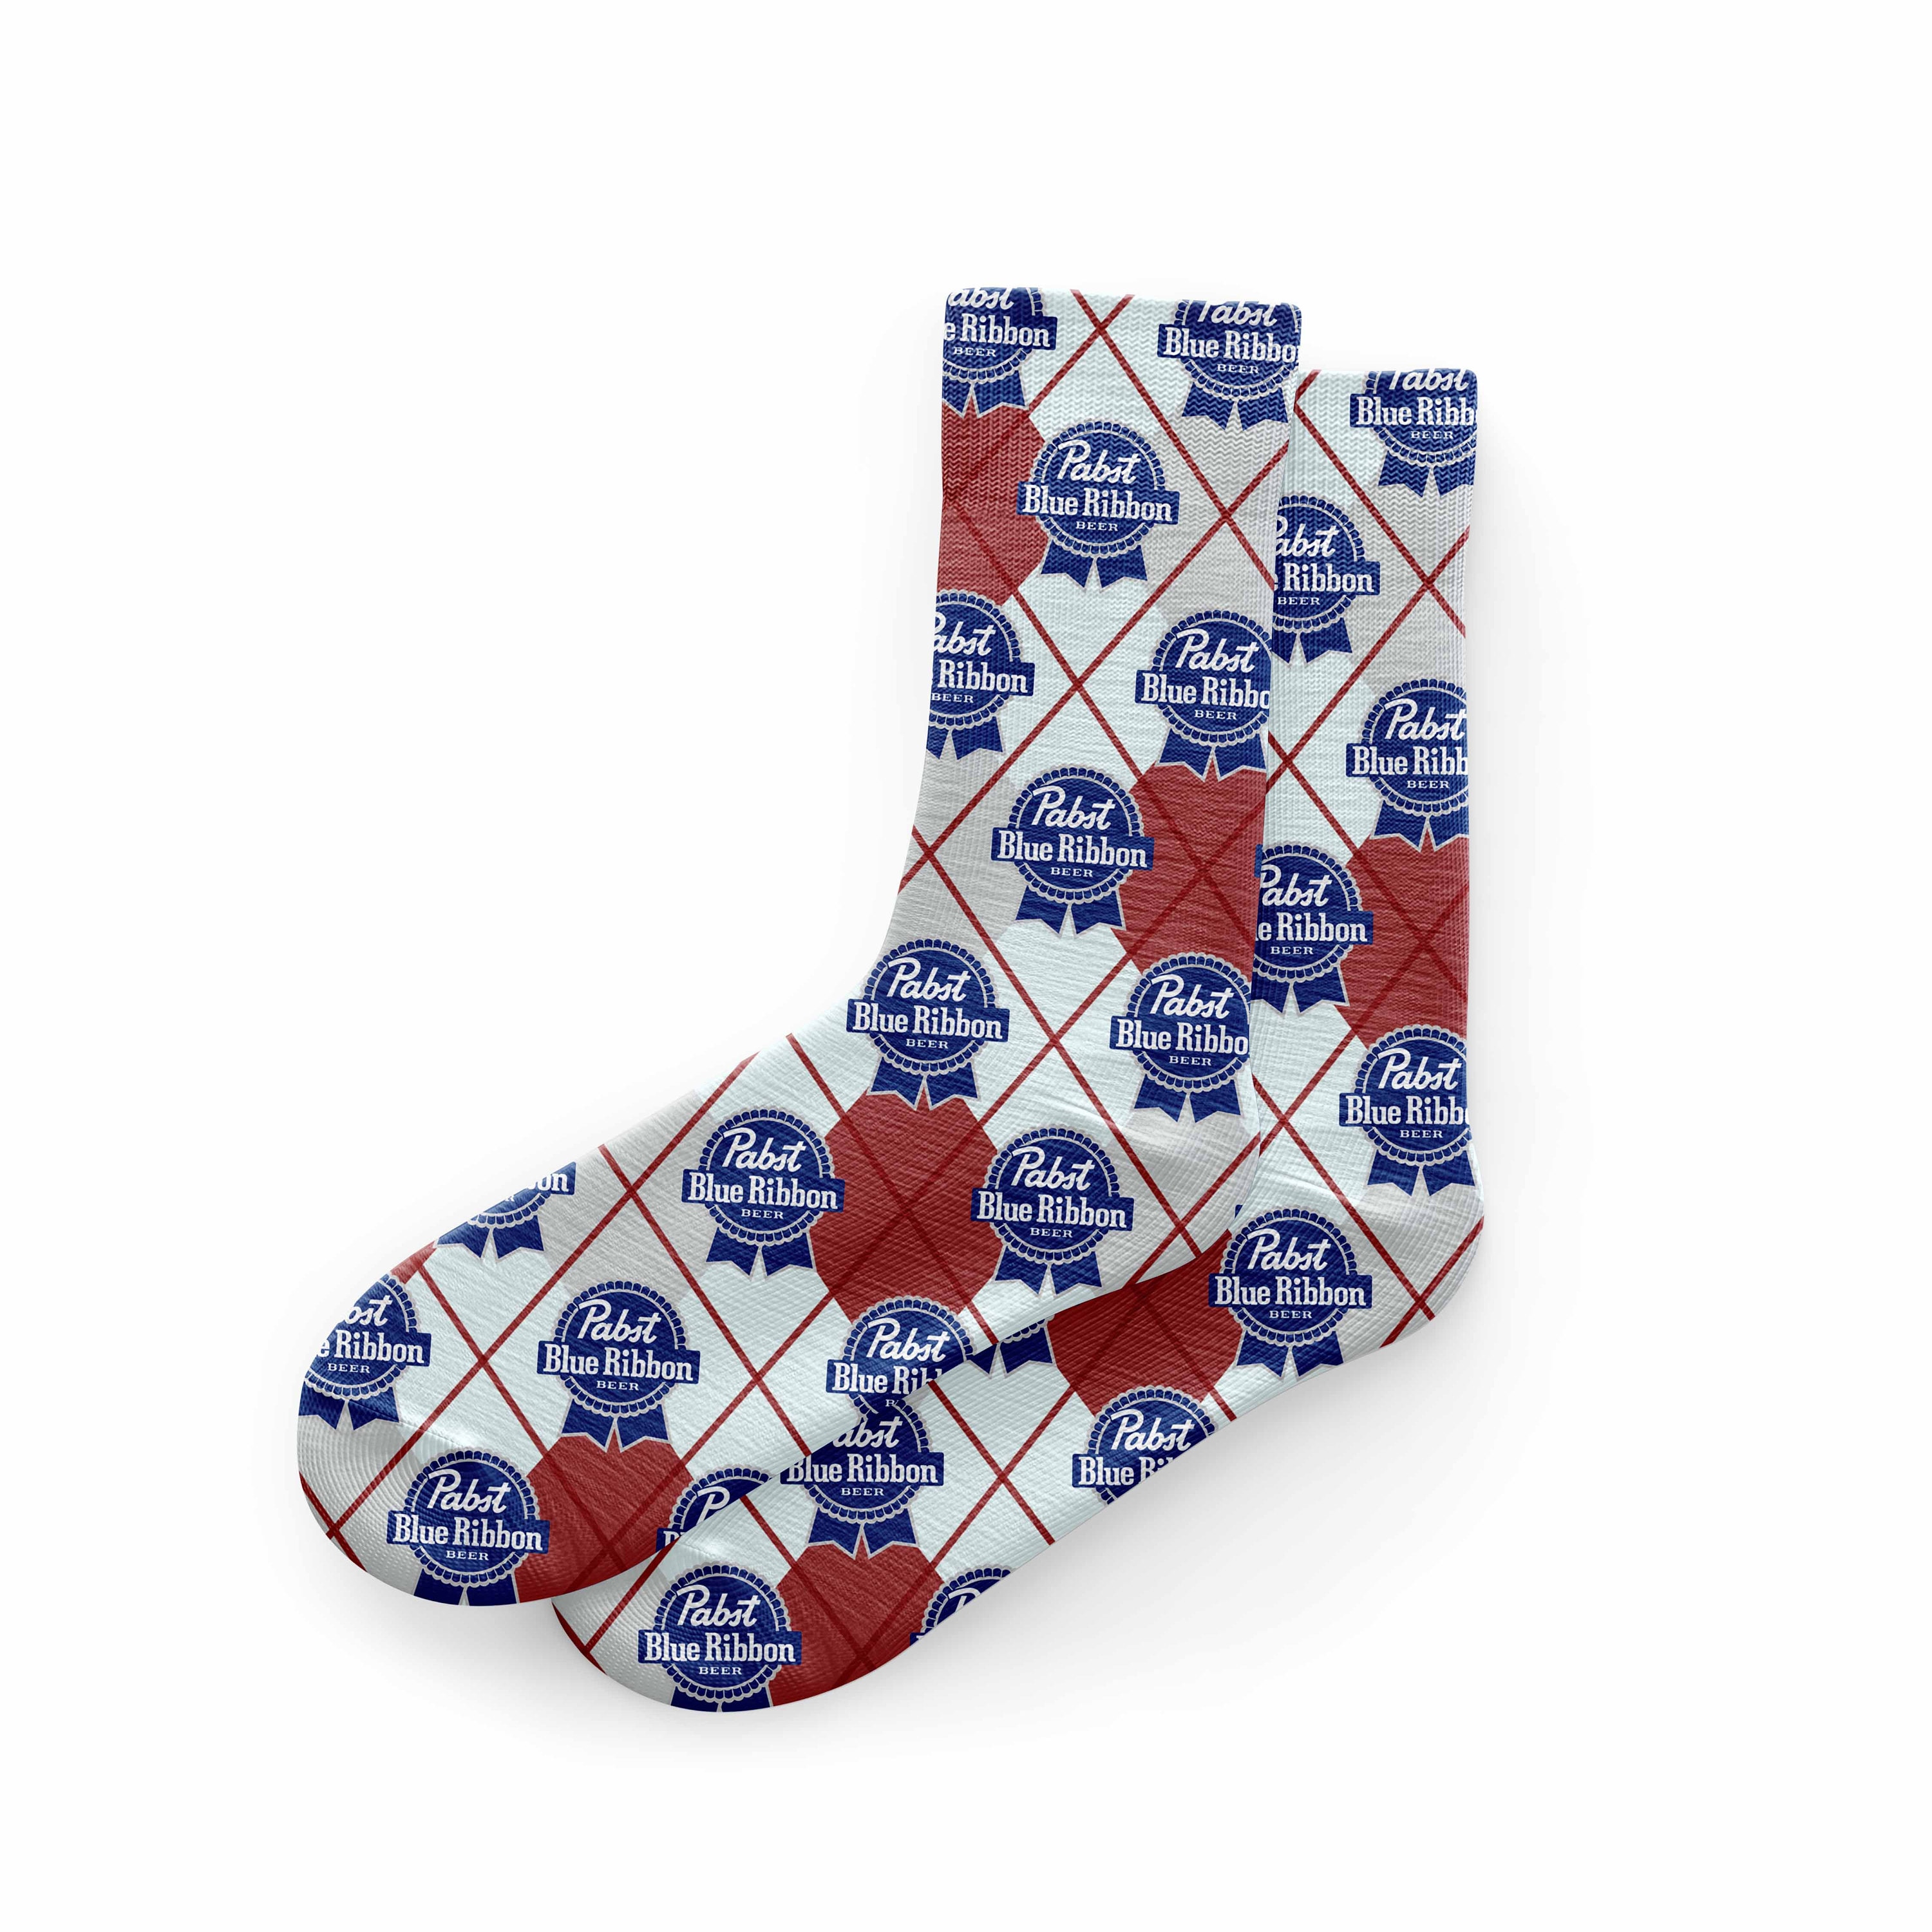 Pabst Blue Ribbon Socks Hipster Argyle Socks